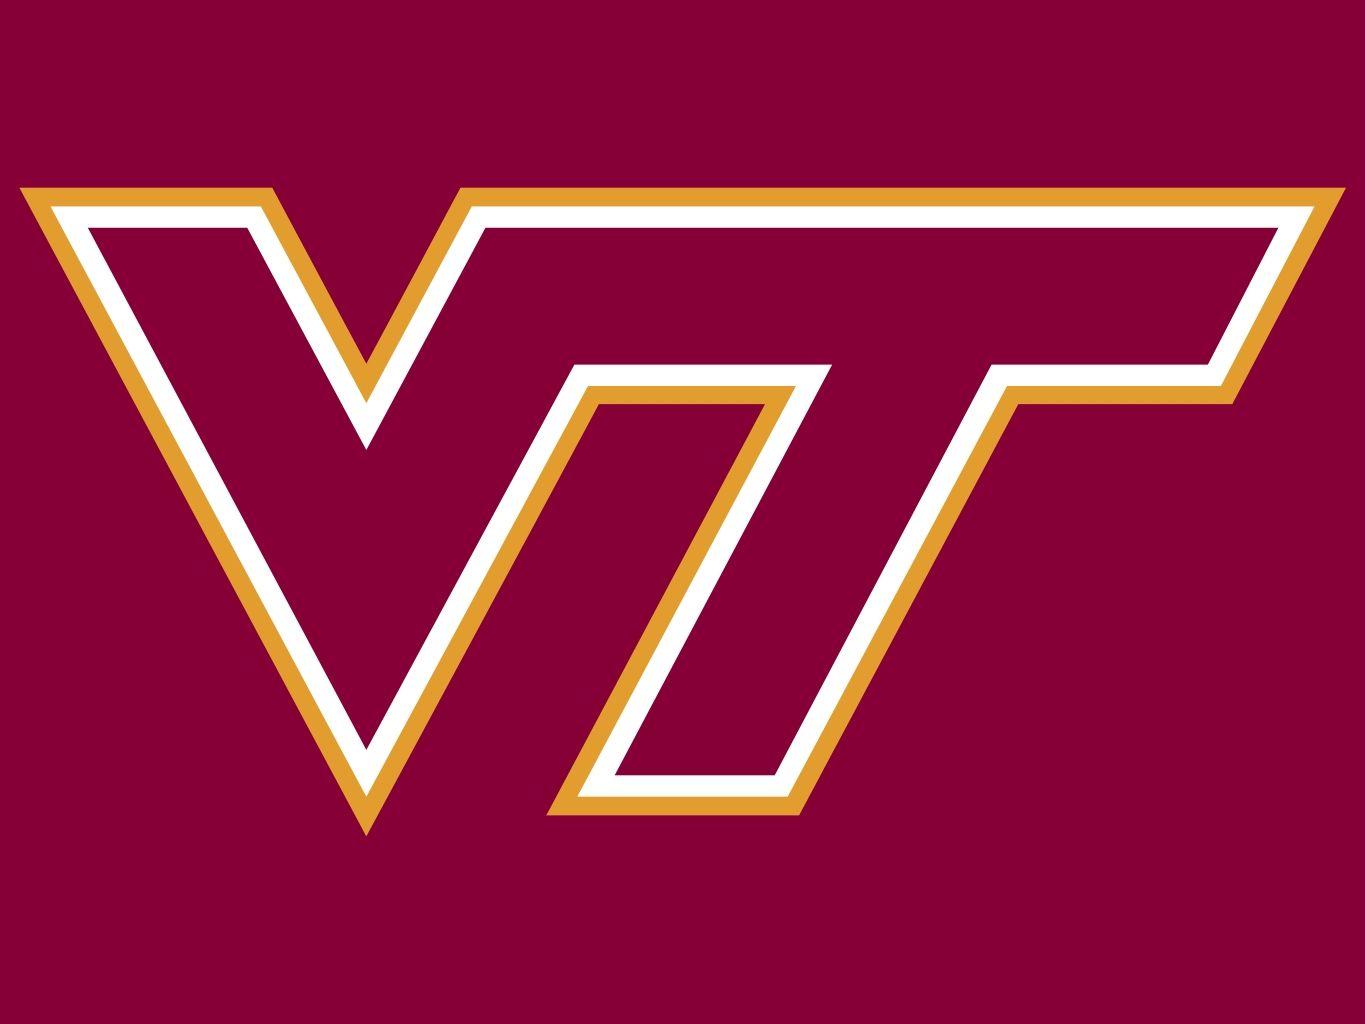 Hokies Logo - Virginia Tech – Logo | Our Schools | Virginia tech, Virginia tech ...